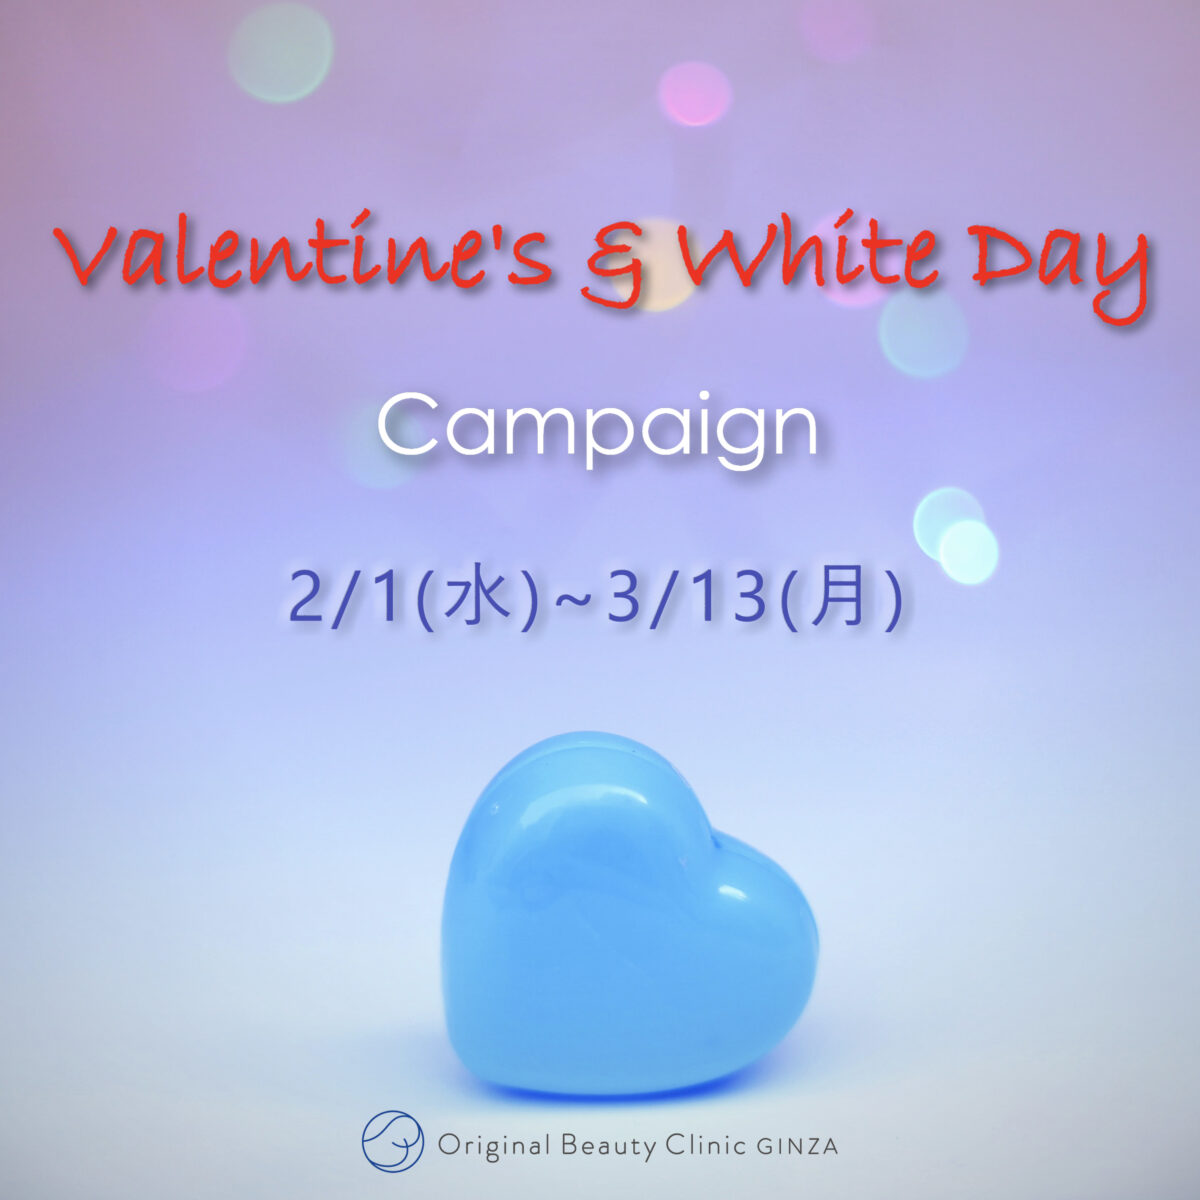 Valentine's & White day Campaign